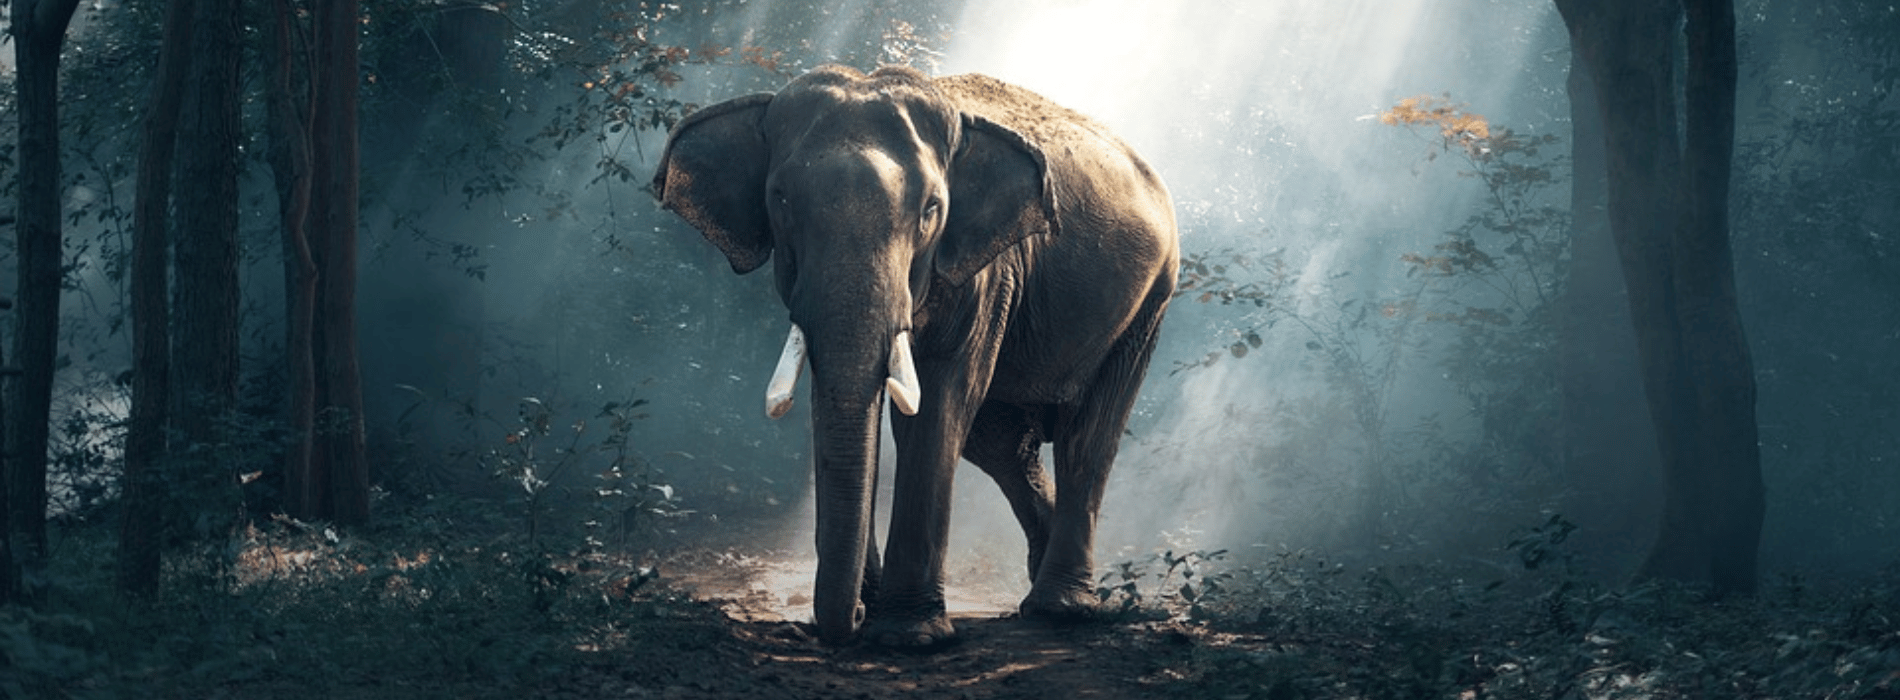 Simbolismo y significado del elefante